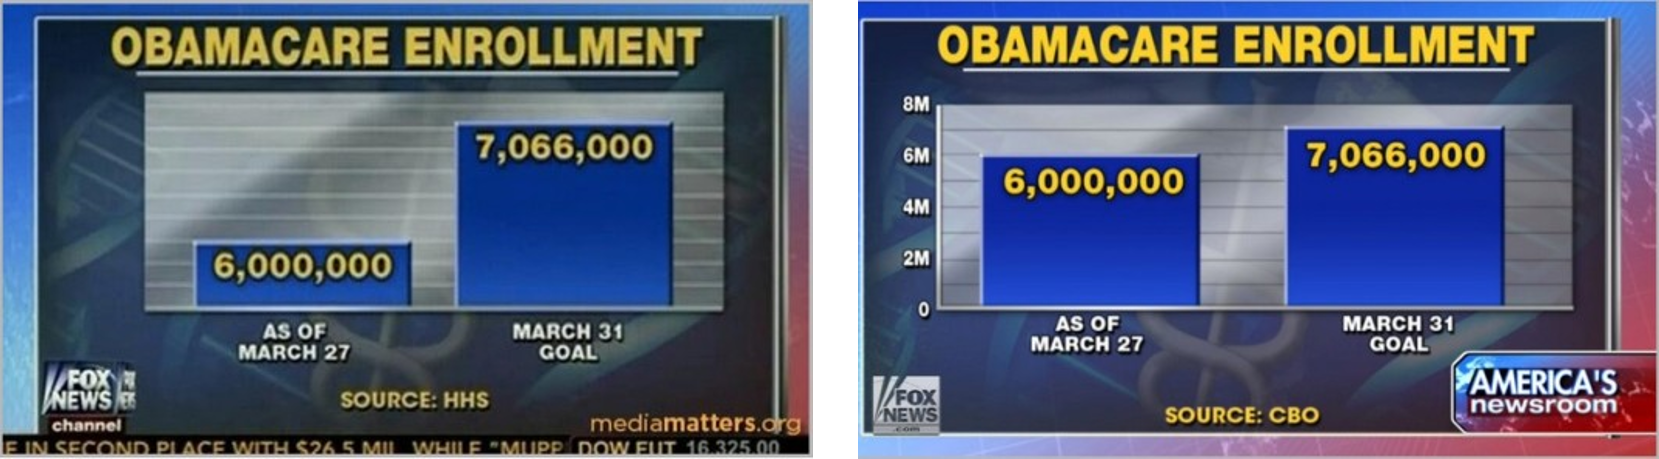 (좌) 오바마 케어 등록 현황을 보도한 Fox News의 시각화 차트 활용 오류, (우) 좌측 차트를 올바르게 수정한 형태